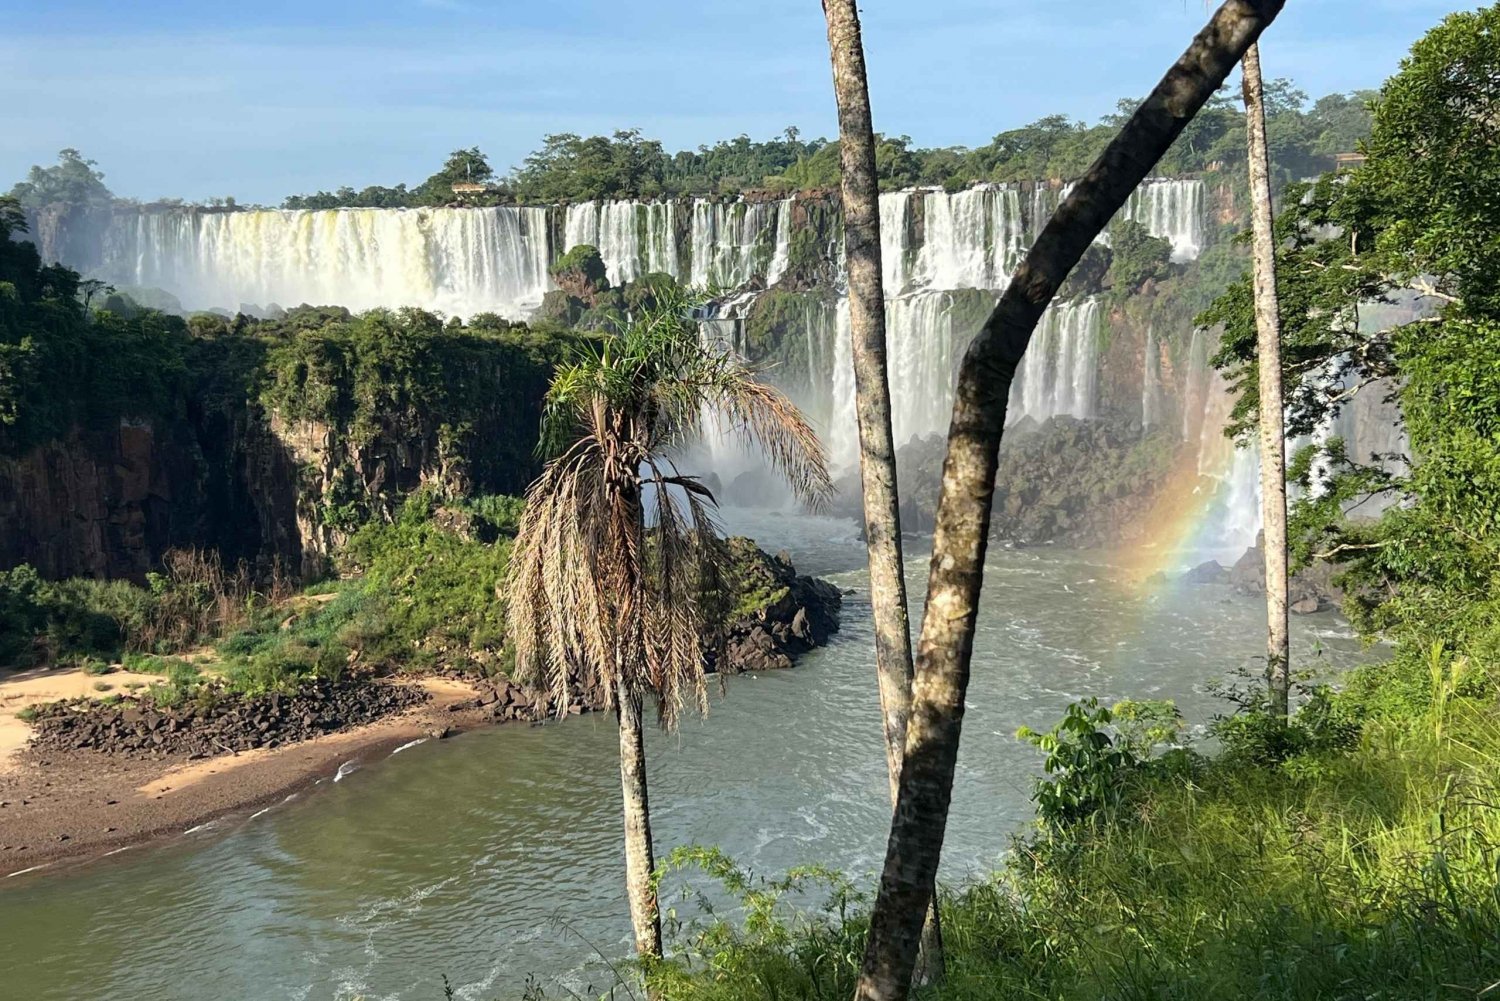 Guía y transporte en las Cataratas de Iguazú